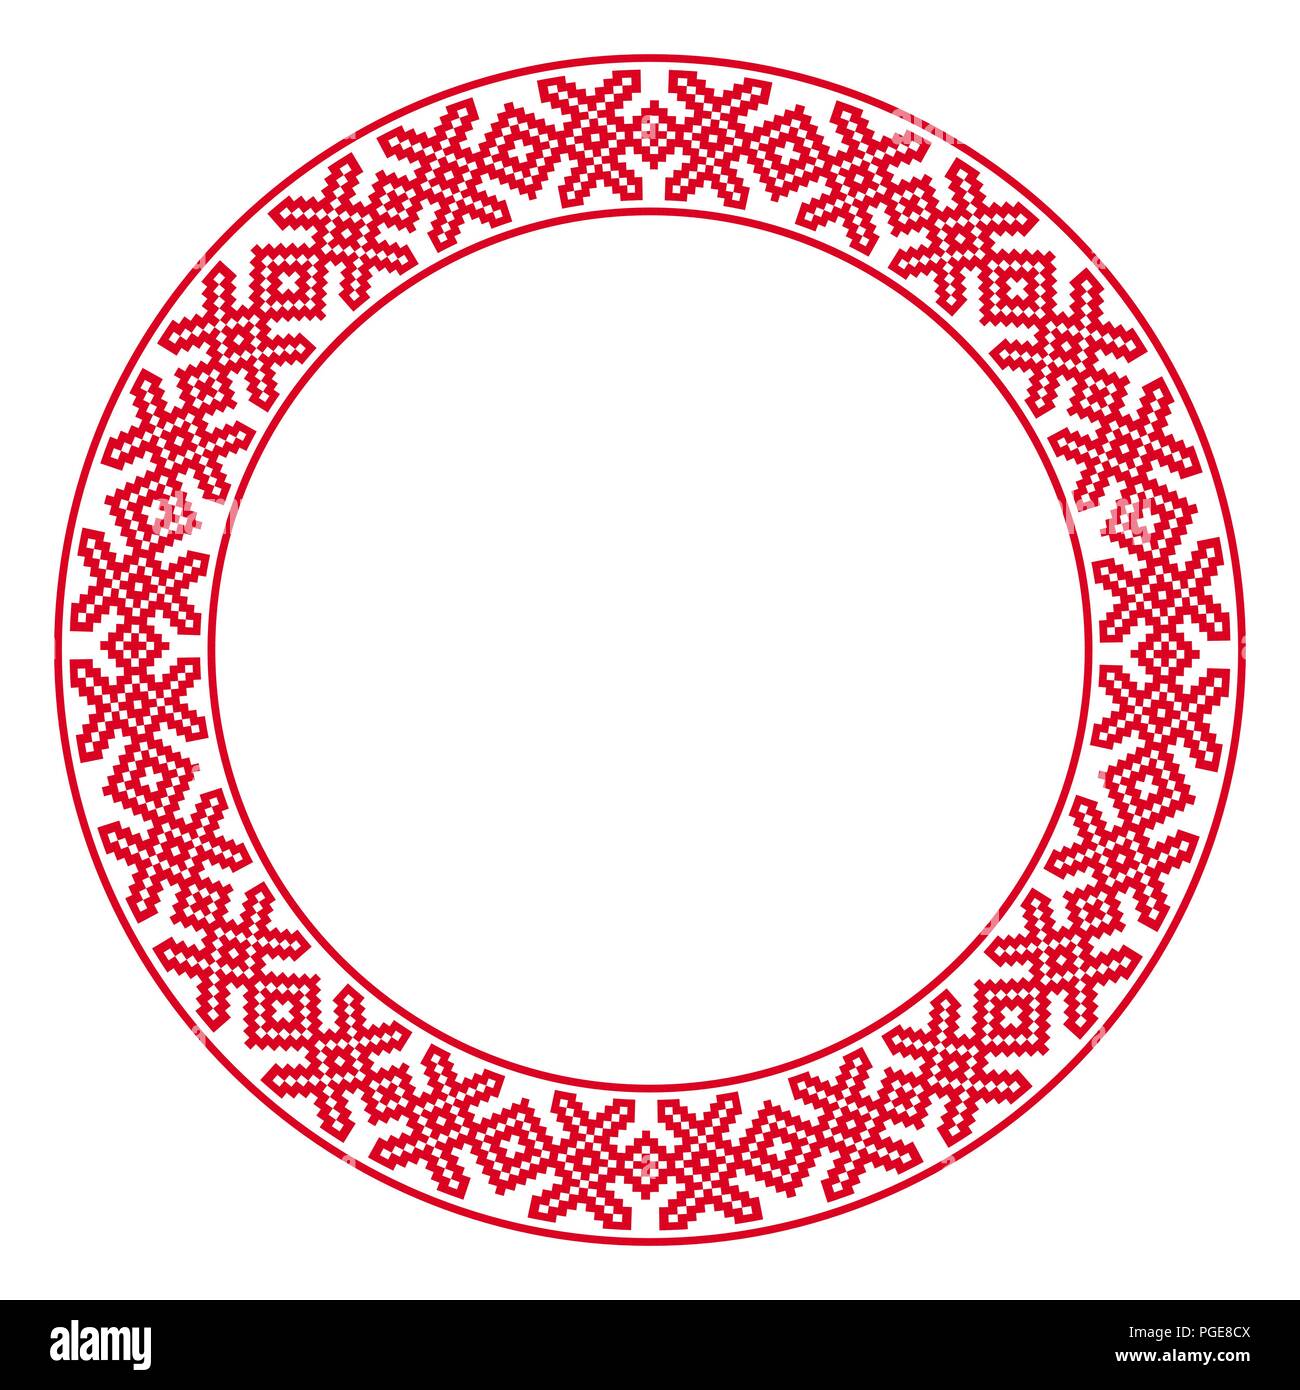 Traditionelle runde Stickerei. Vector Illustration der ethnischen Runde geometrische gestickte Muster für Ihr Design Stock Vektor